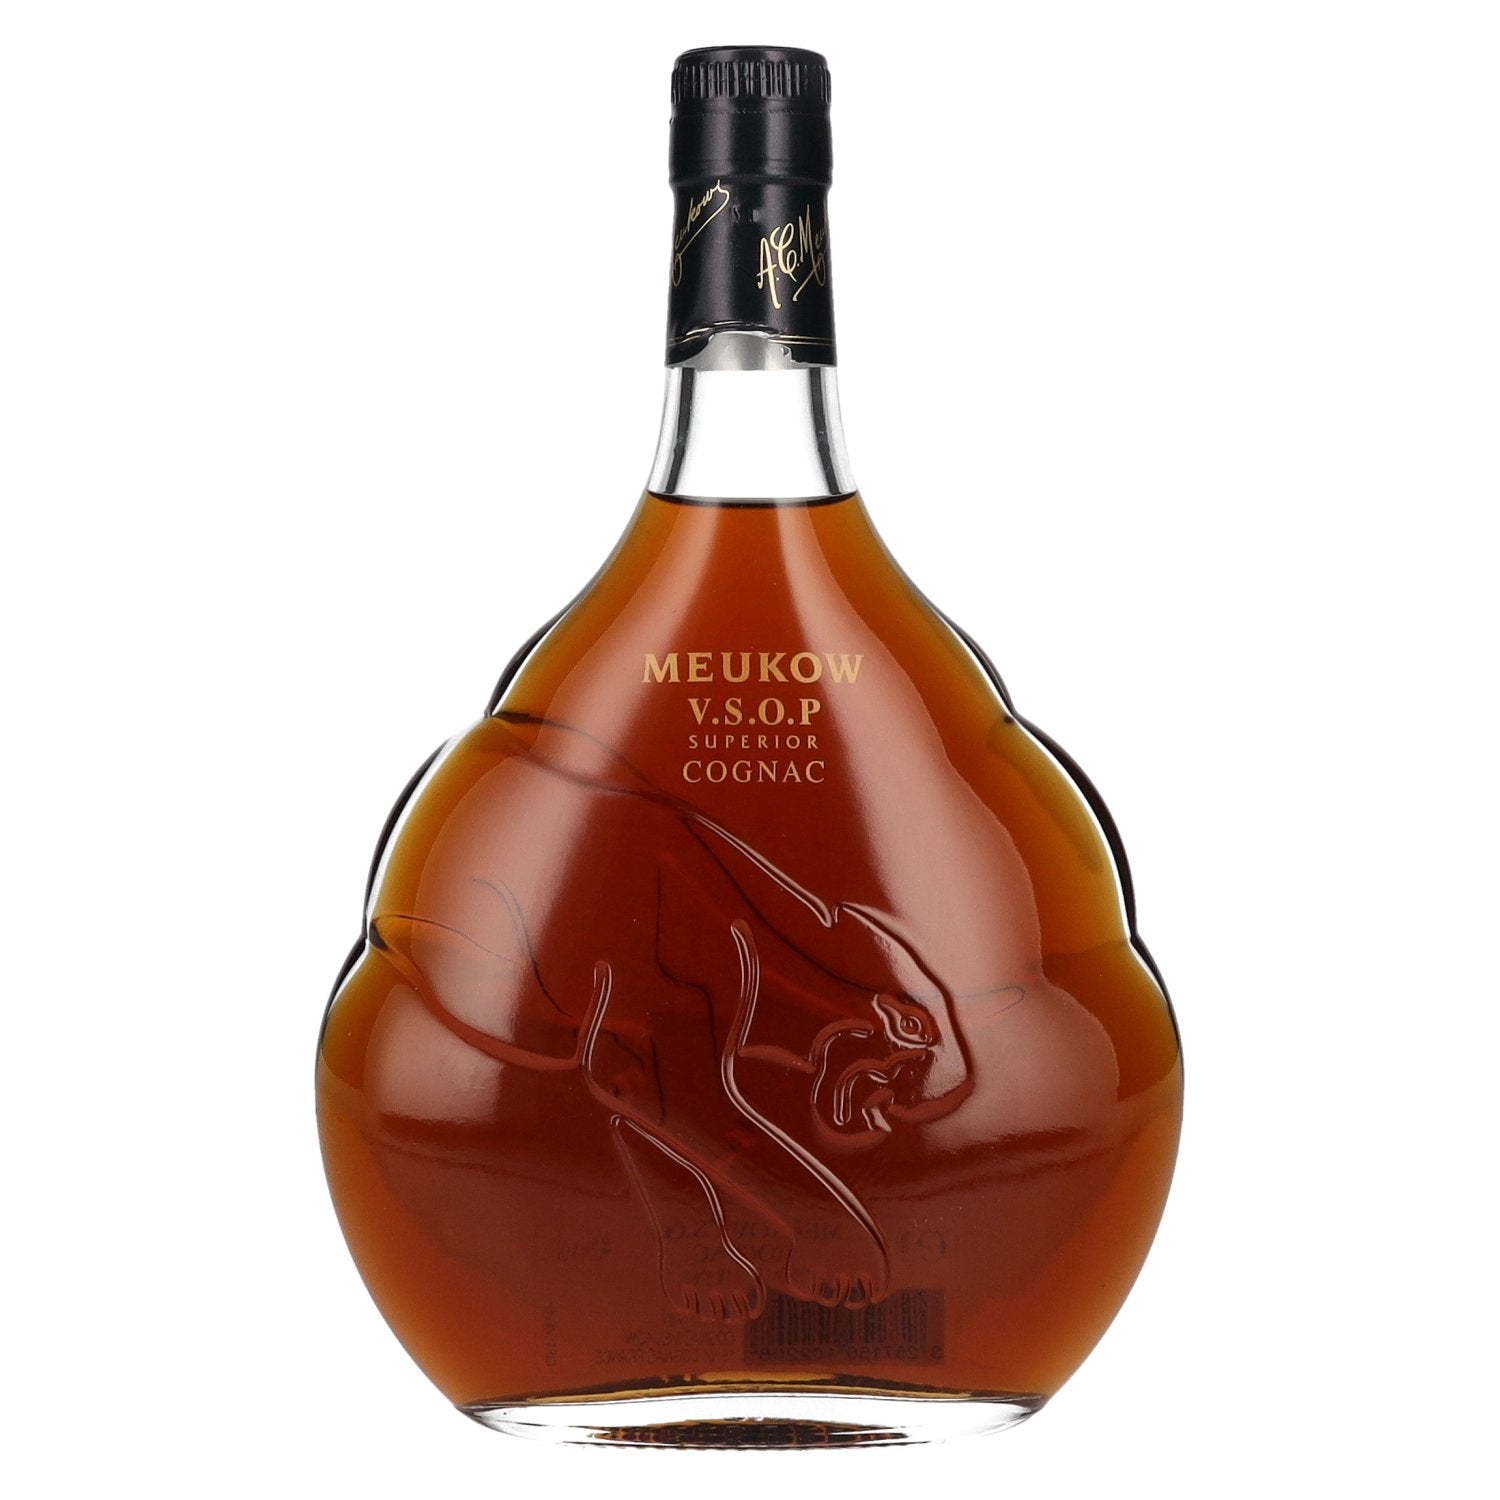 Meukow V.S.O.P Superior Cognac 40% Vol. 0,7l